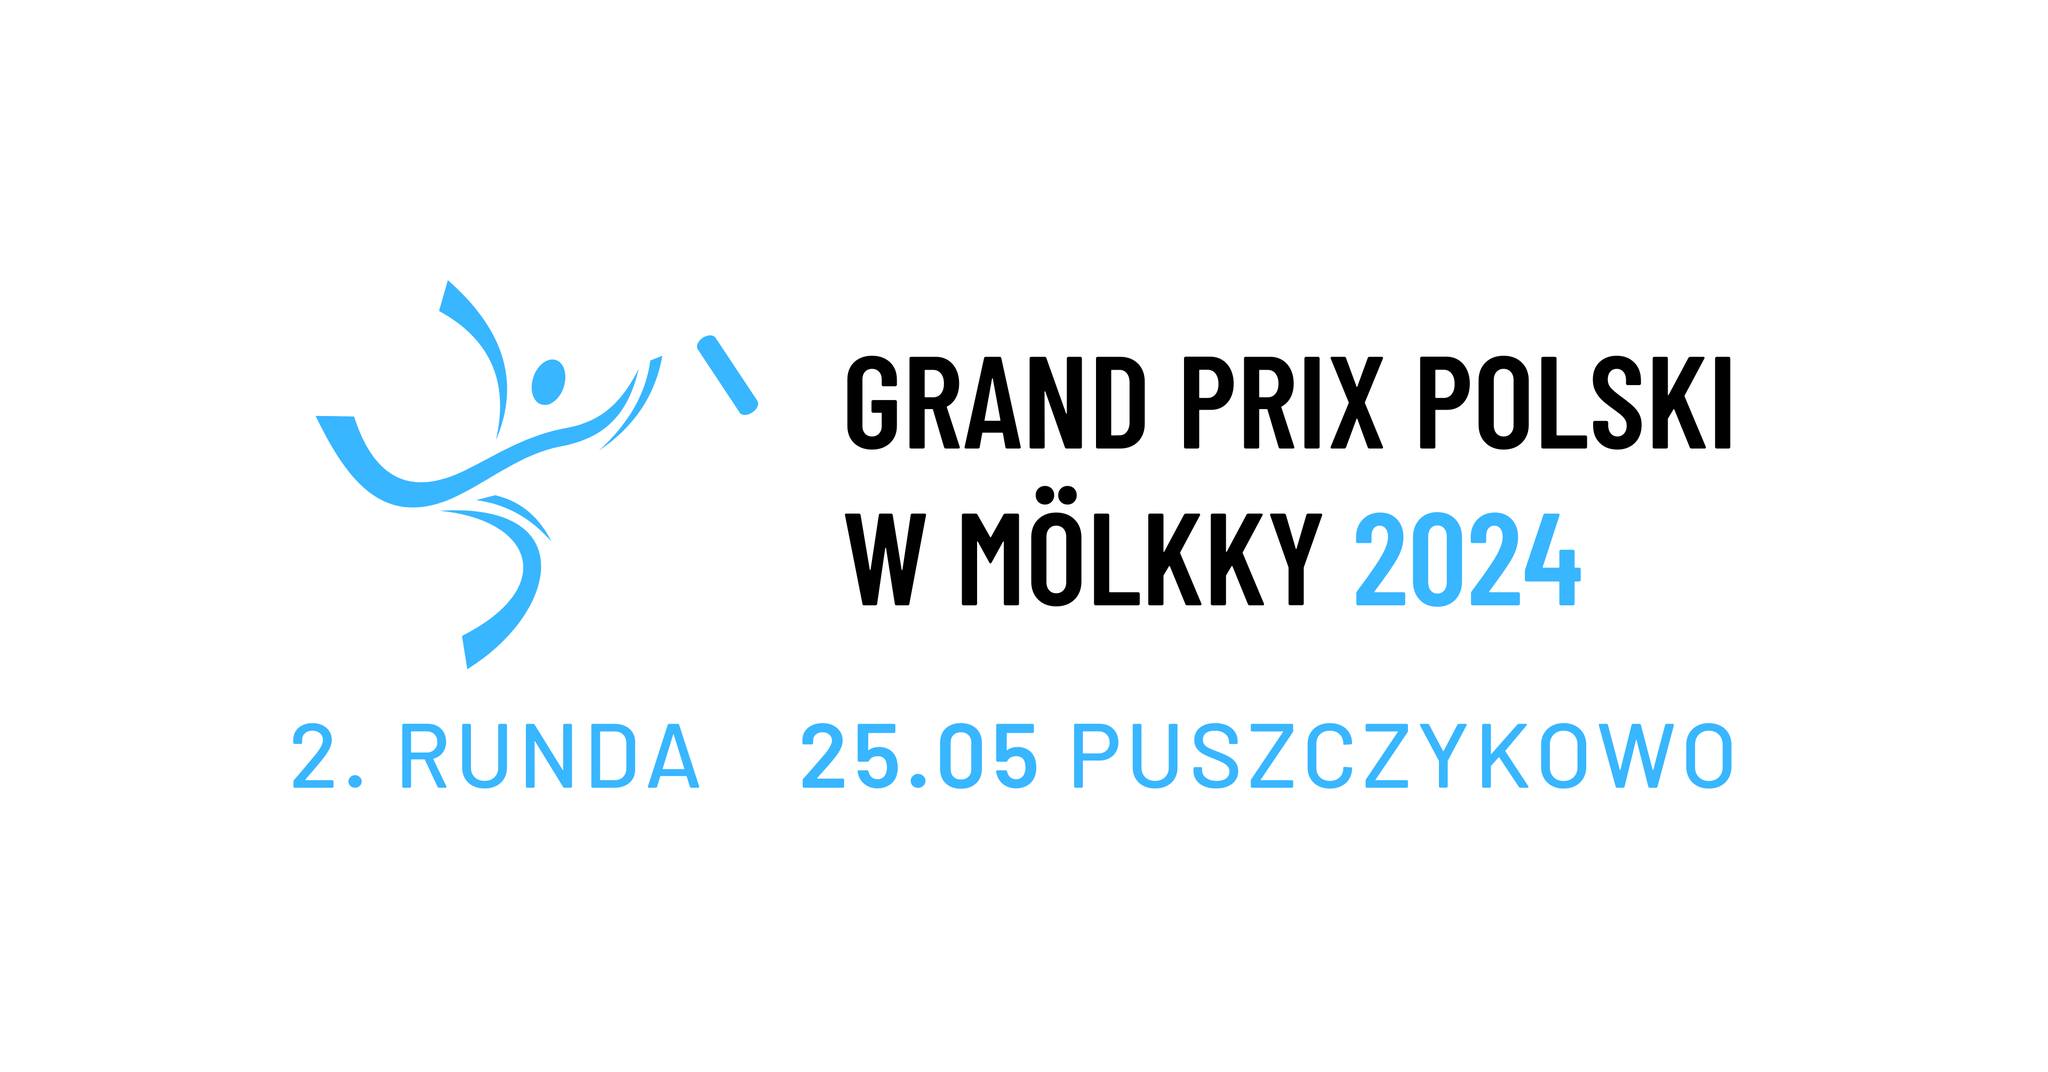 Grand Prix of Poland - event 2/5